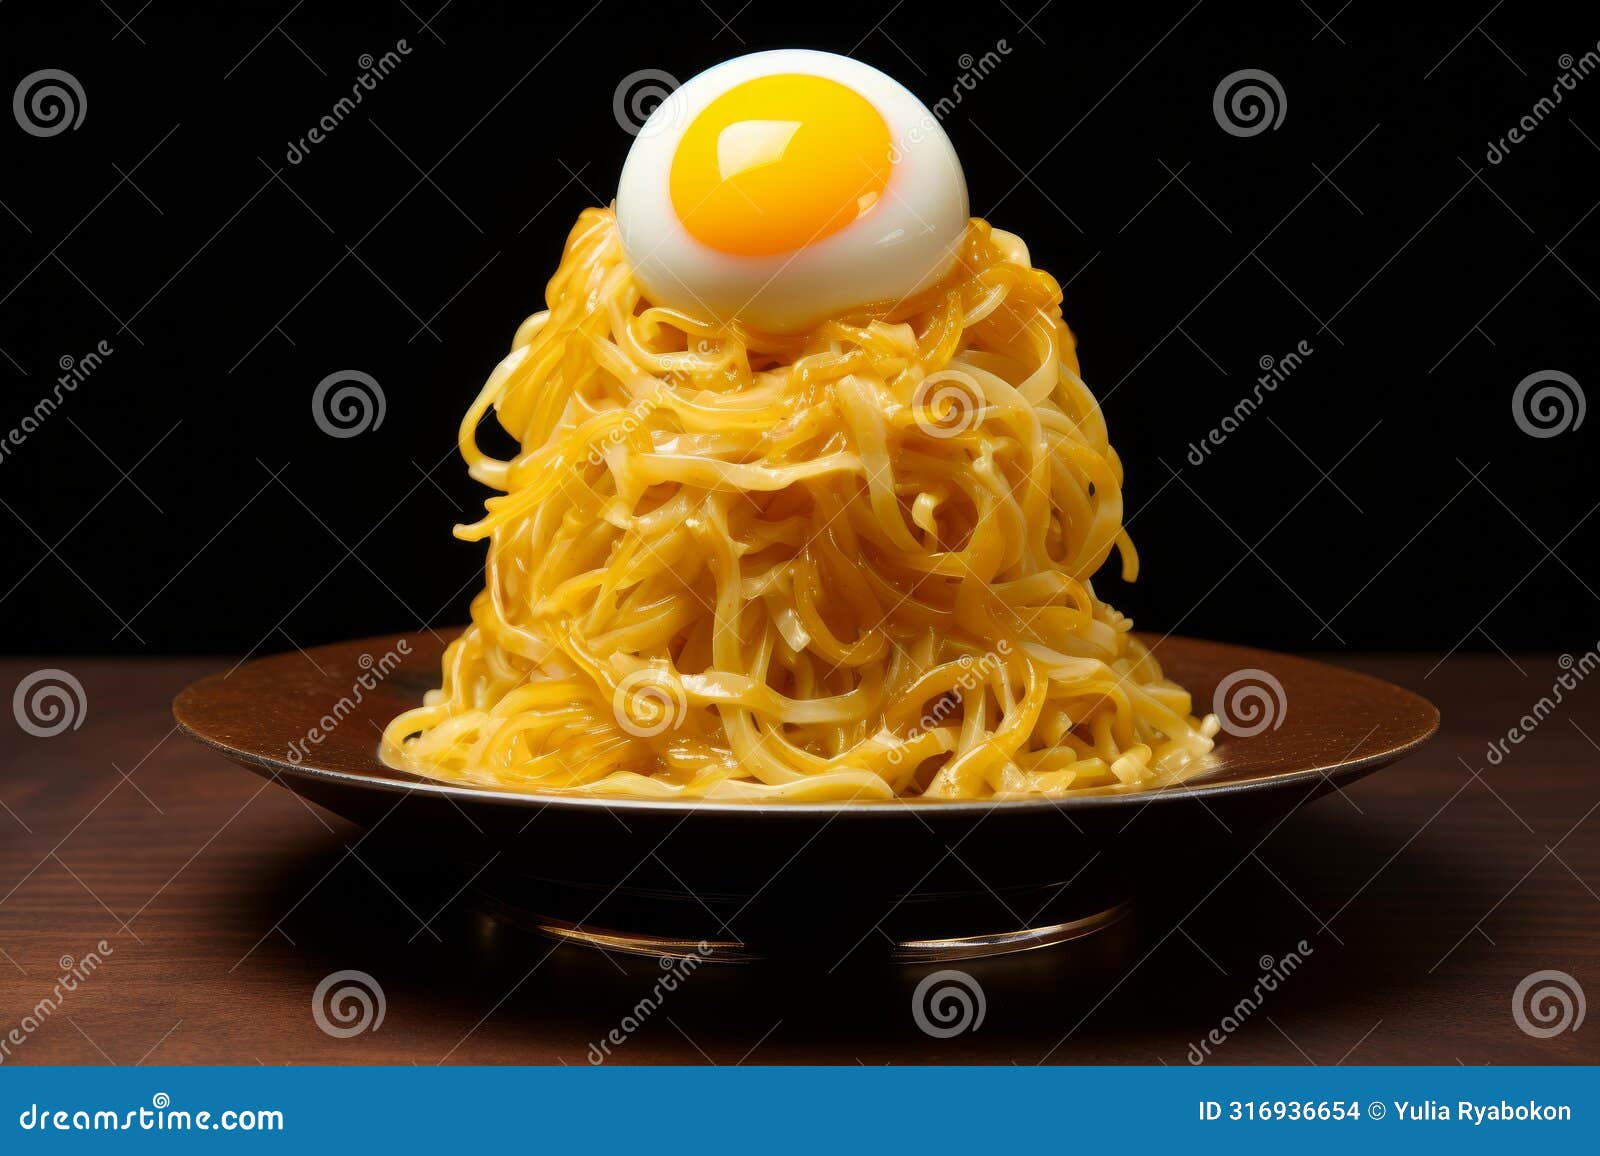 versatile egg pasta. generate ai